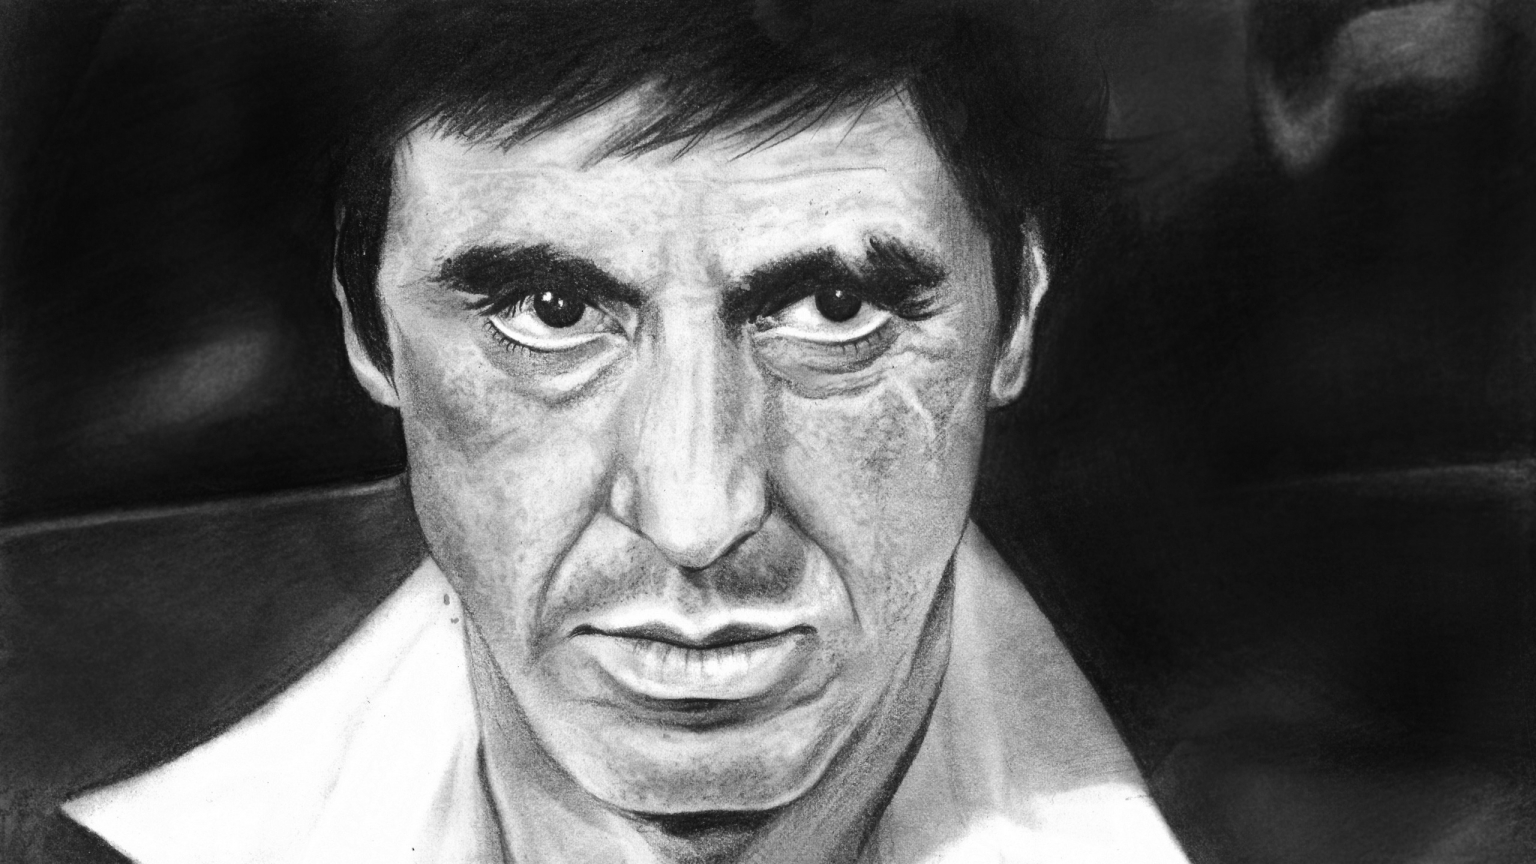 Al Pacino Scarface Fan Art for 1536 x 864 HDTV resolution